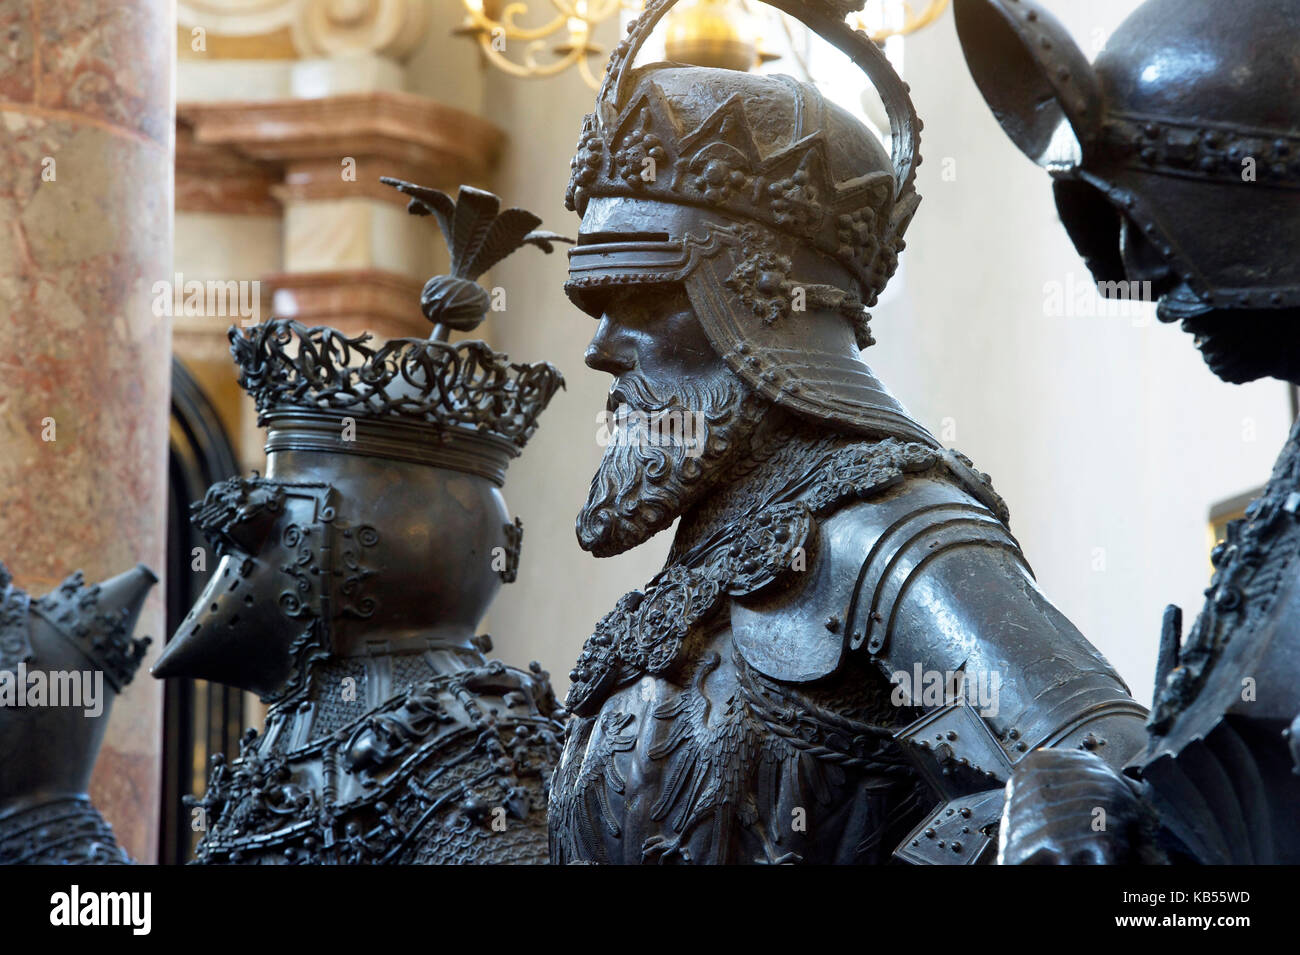 Austria, Tirol, Innsbruck, hofkirche, 28 monumentales estatuas de bronce rodean la tumba del emperador Maximiliano 1st, el más importante monumento imperial en europa Foto de stock